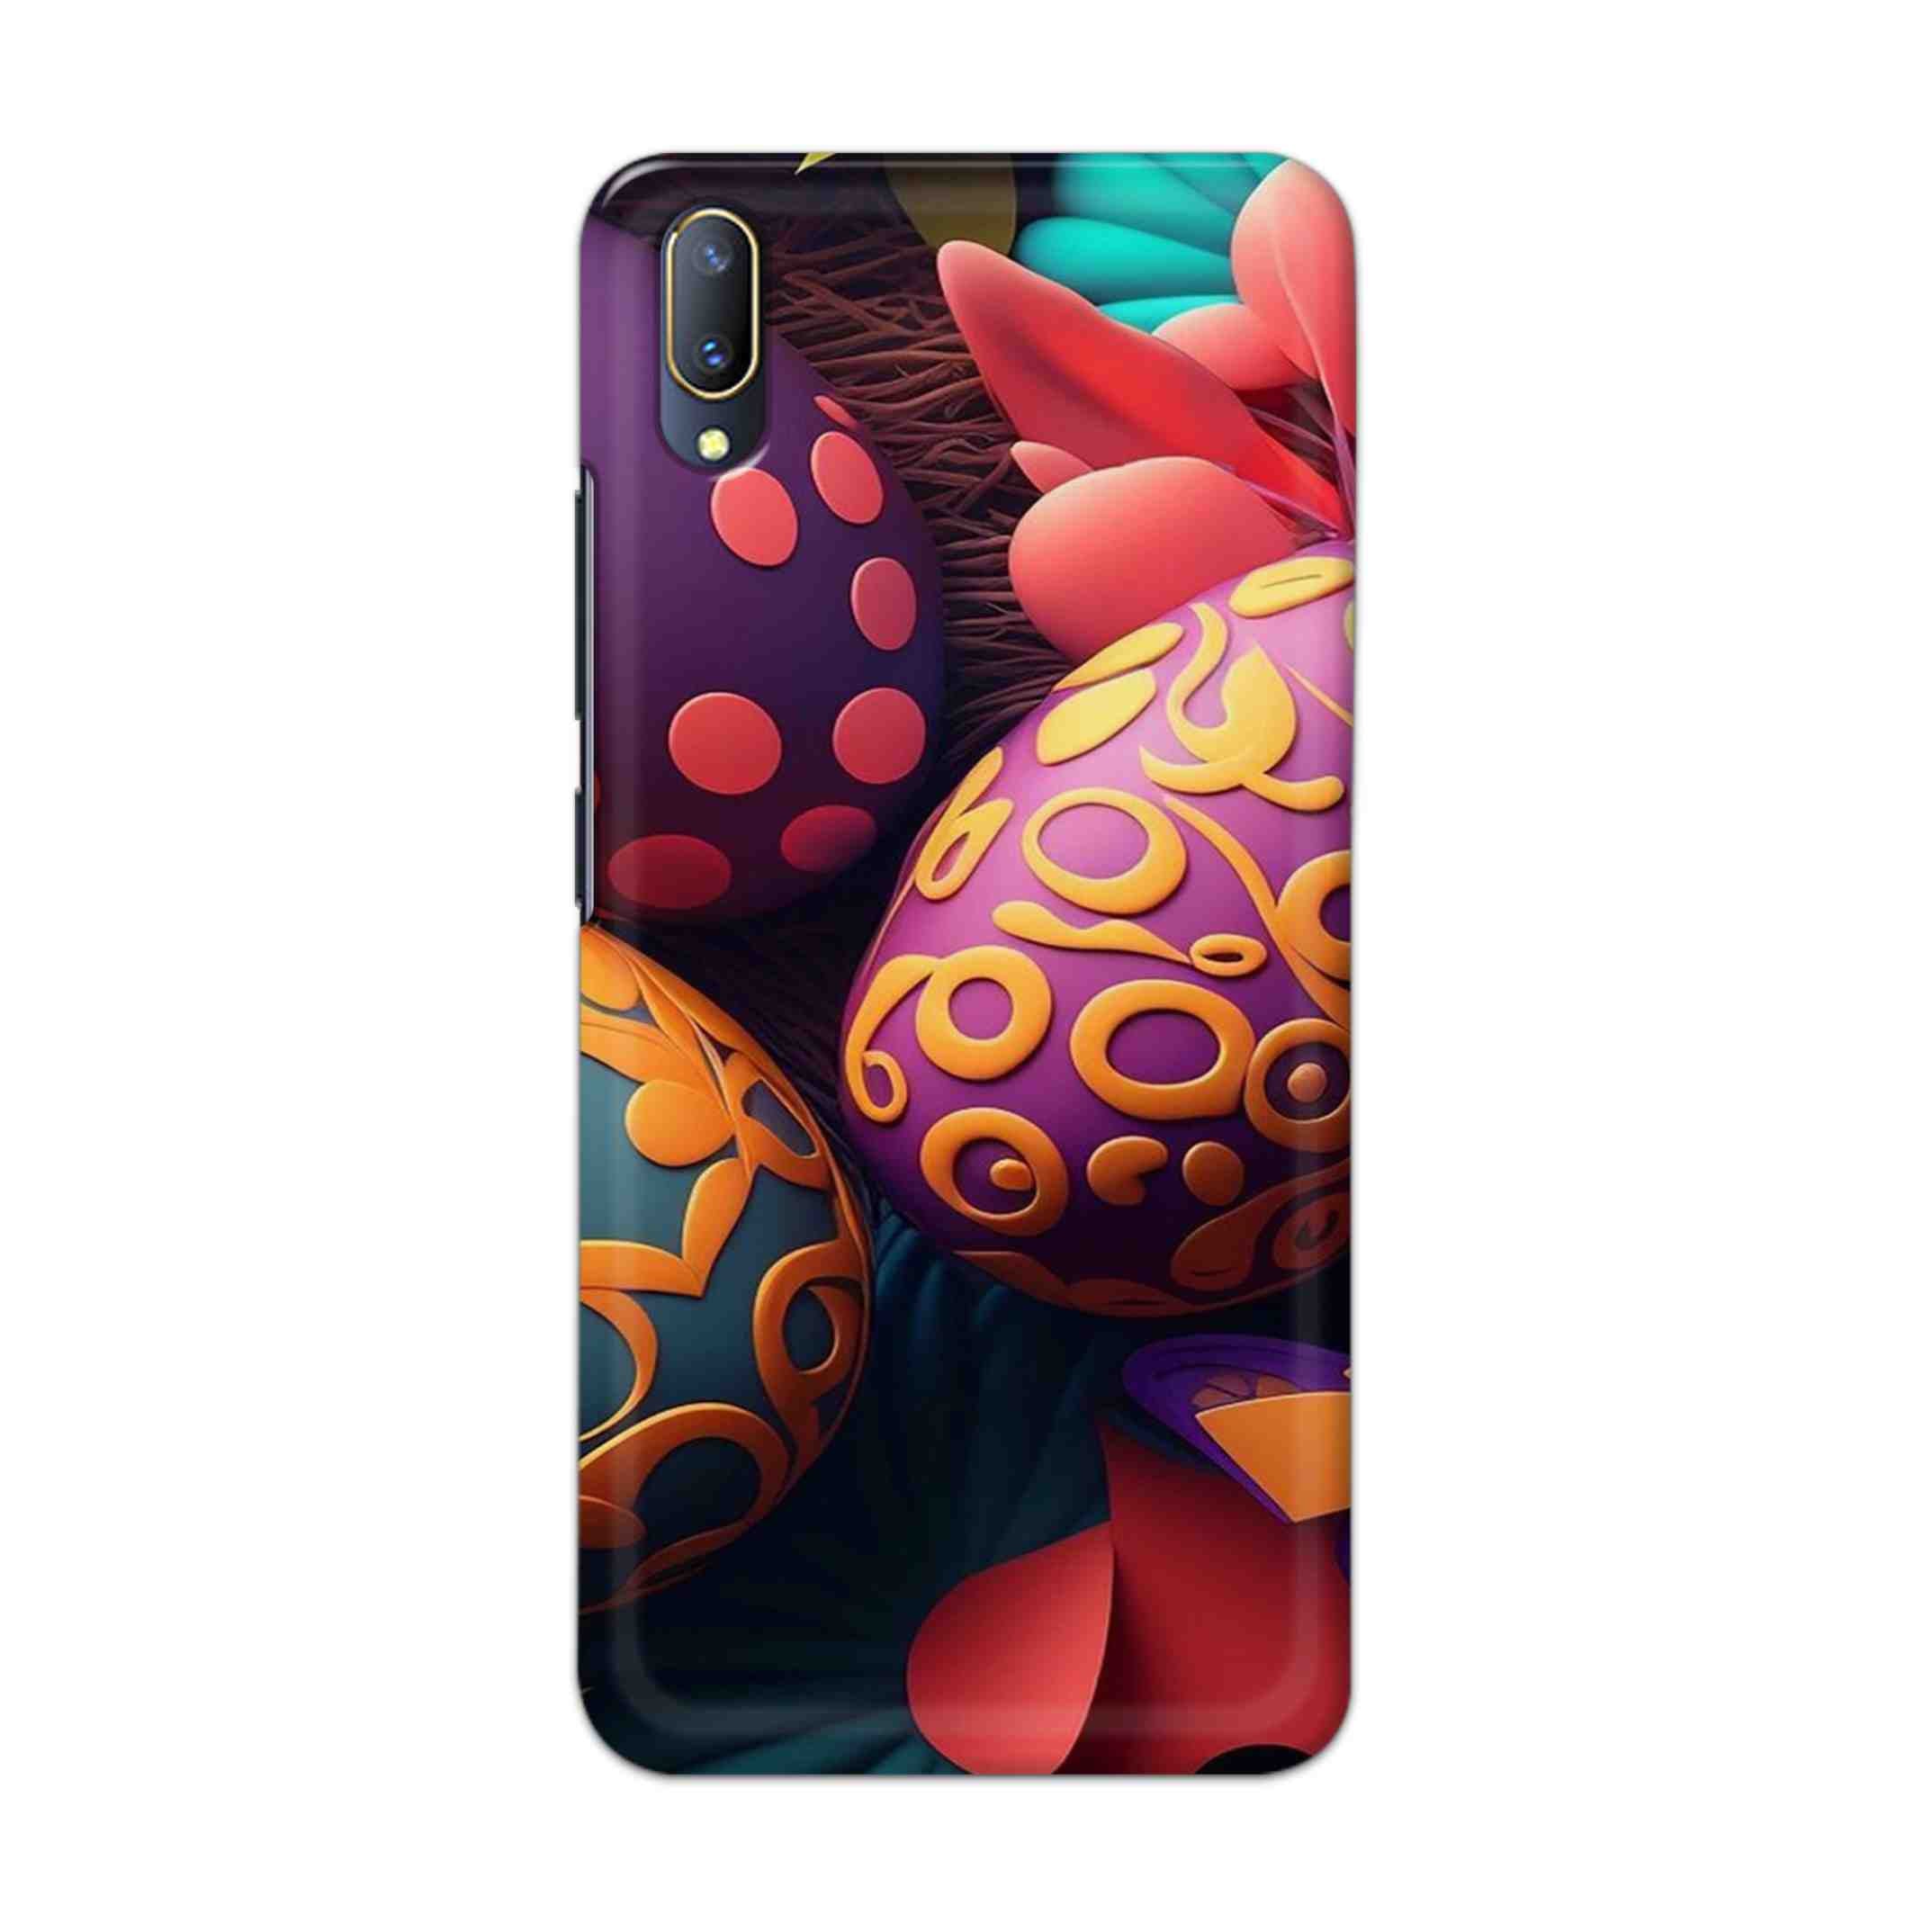 Buy Easter Egg Hard Back Mobile Phone Case Cover For V11 PRO Online